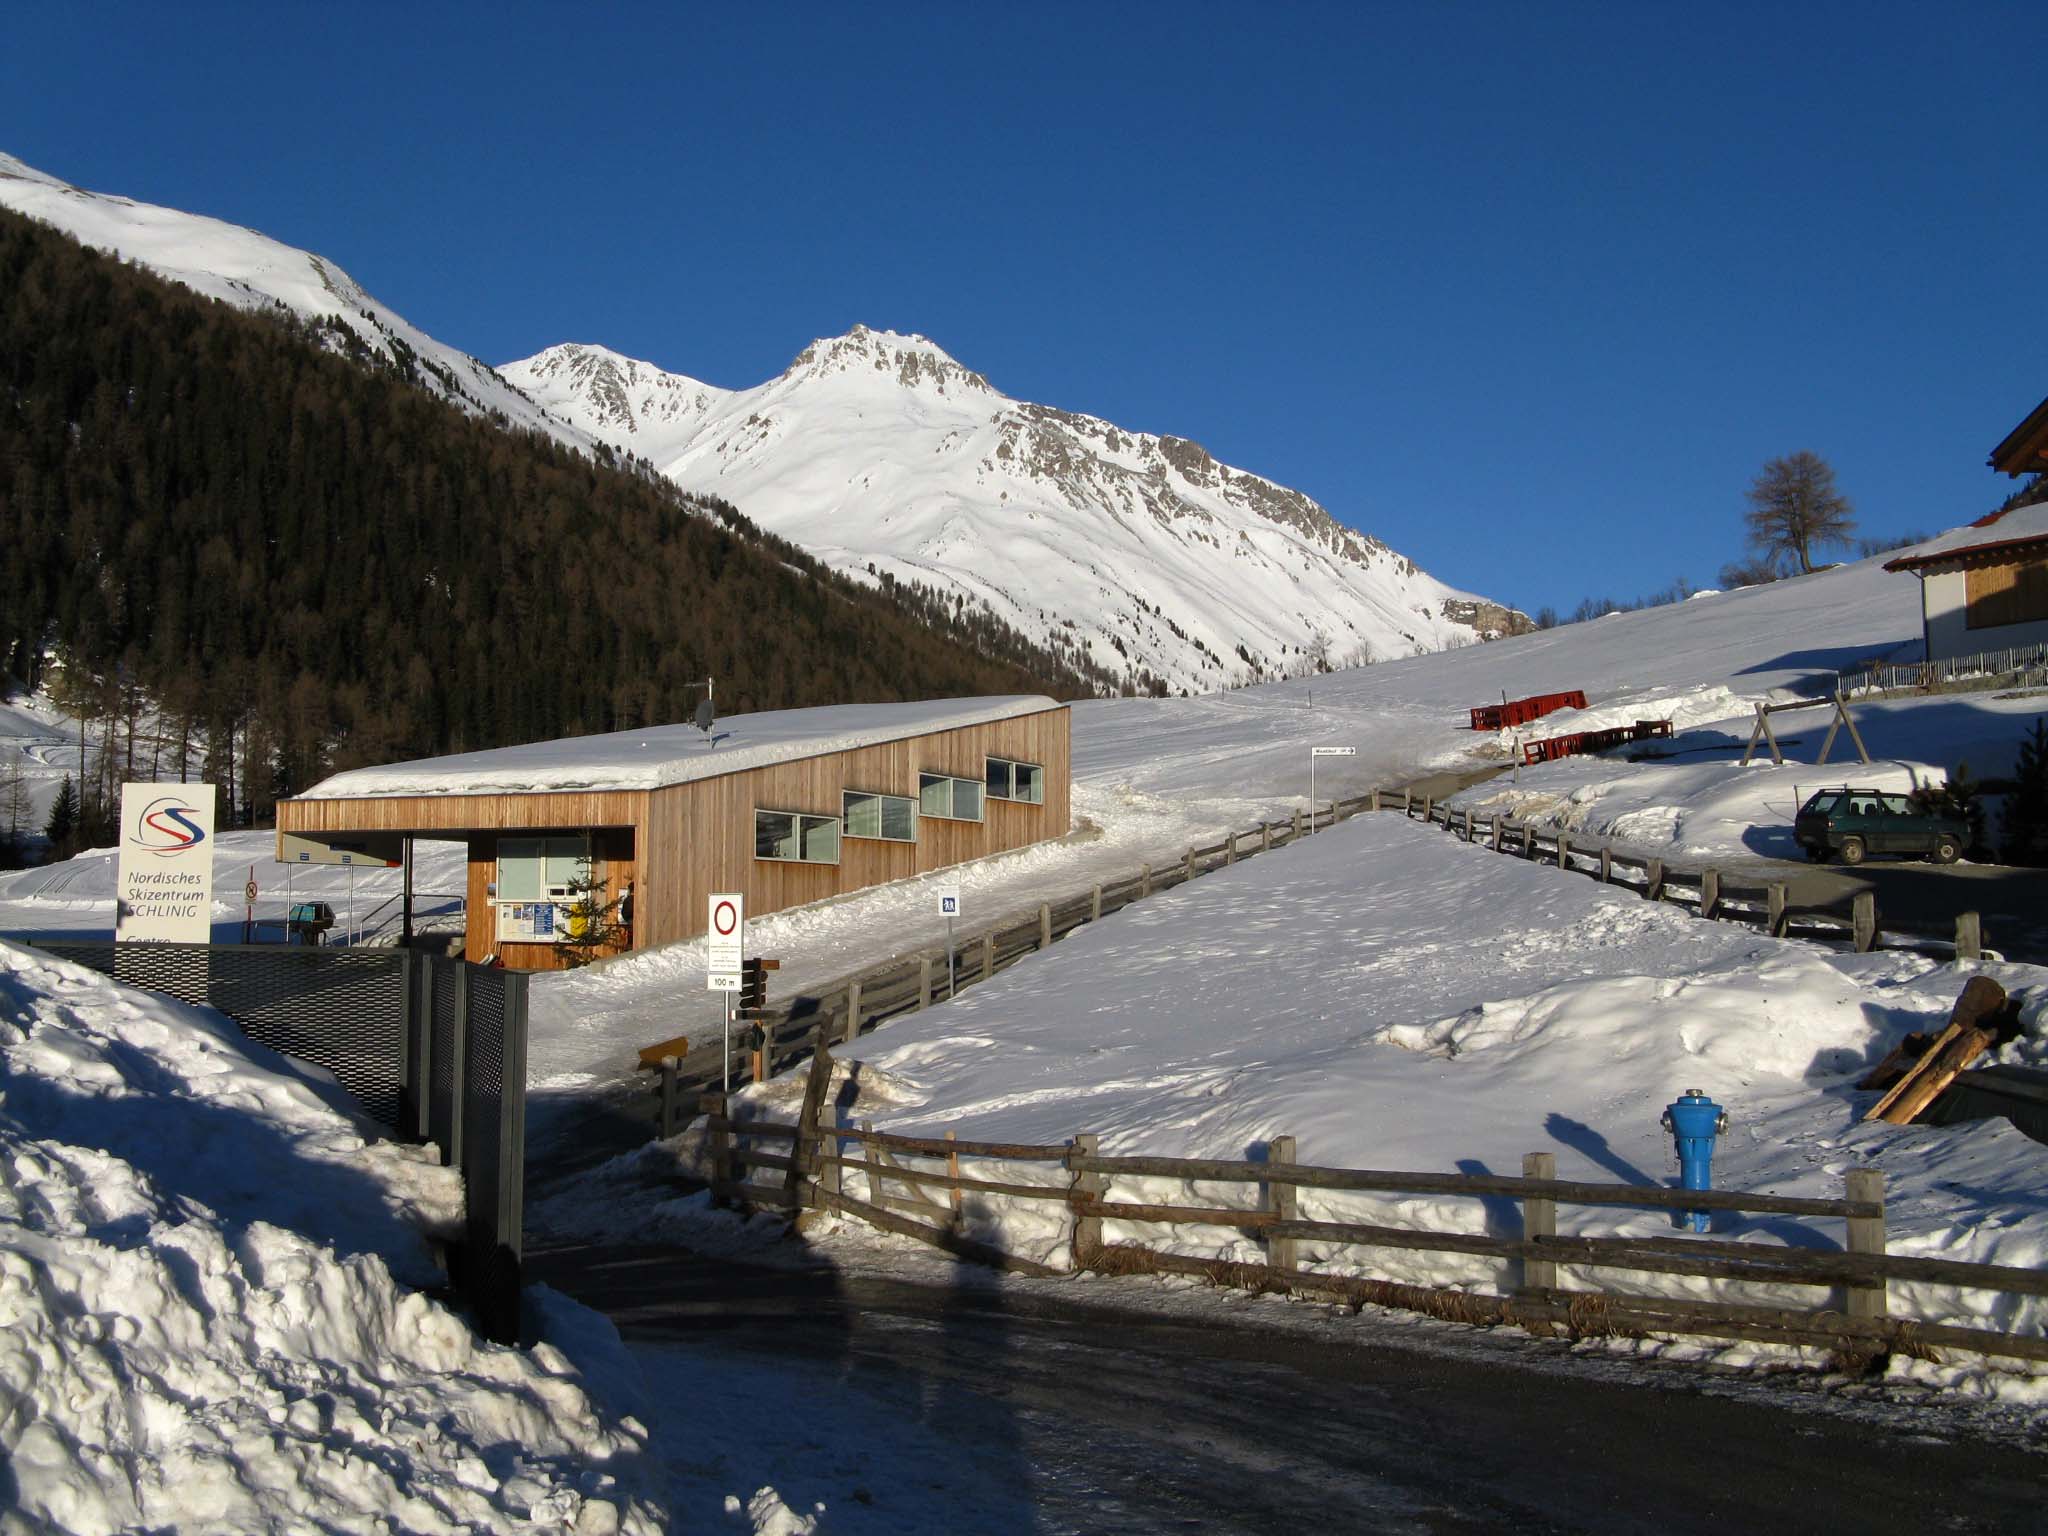 Die heutige Tour geht von Schlinig auf den Piz Sesvenna. Ausgangspunkt ist der Parkplatz beim Nordischen Skizentrum Schlinig.